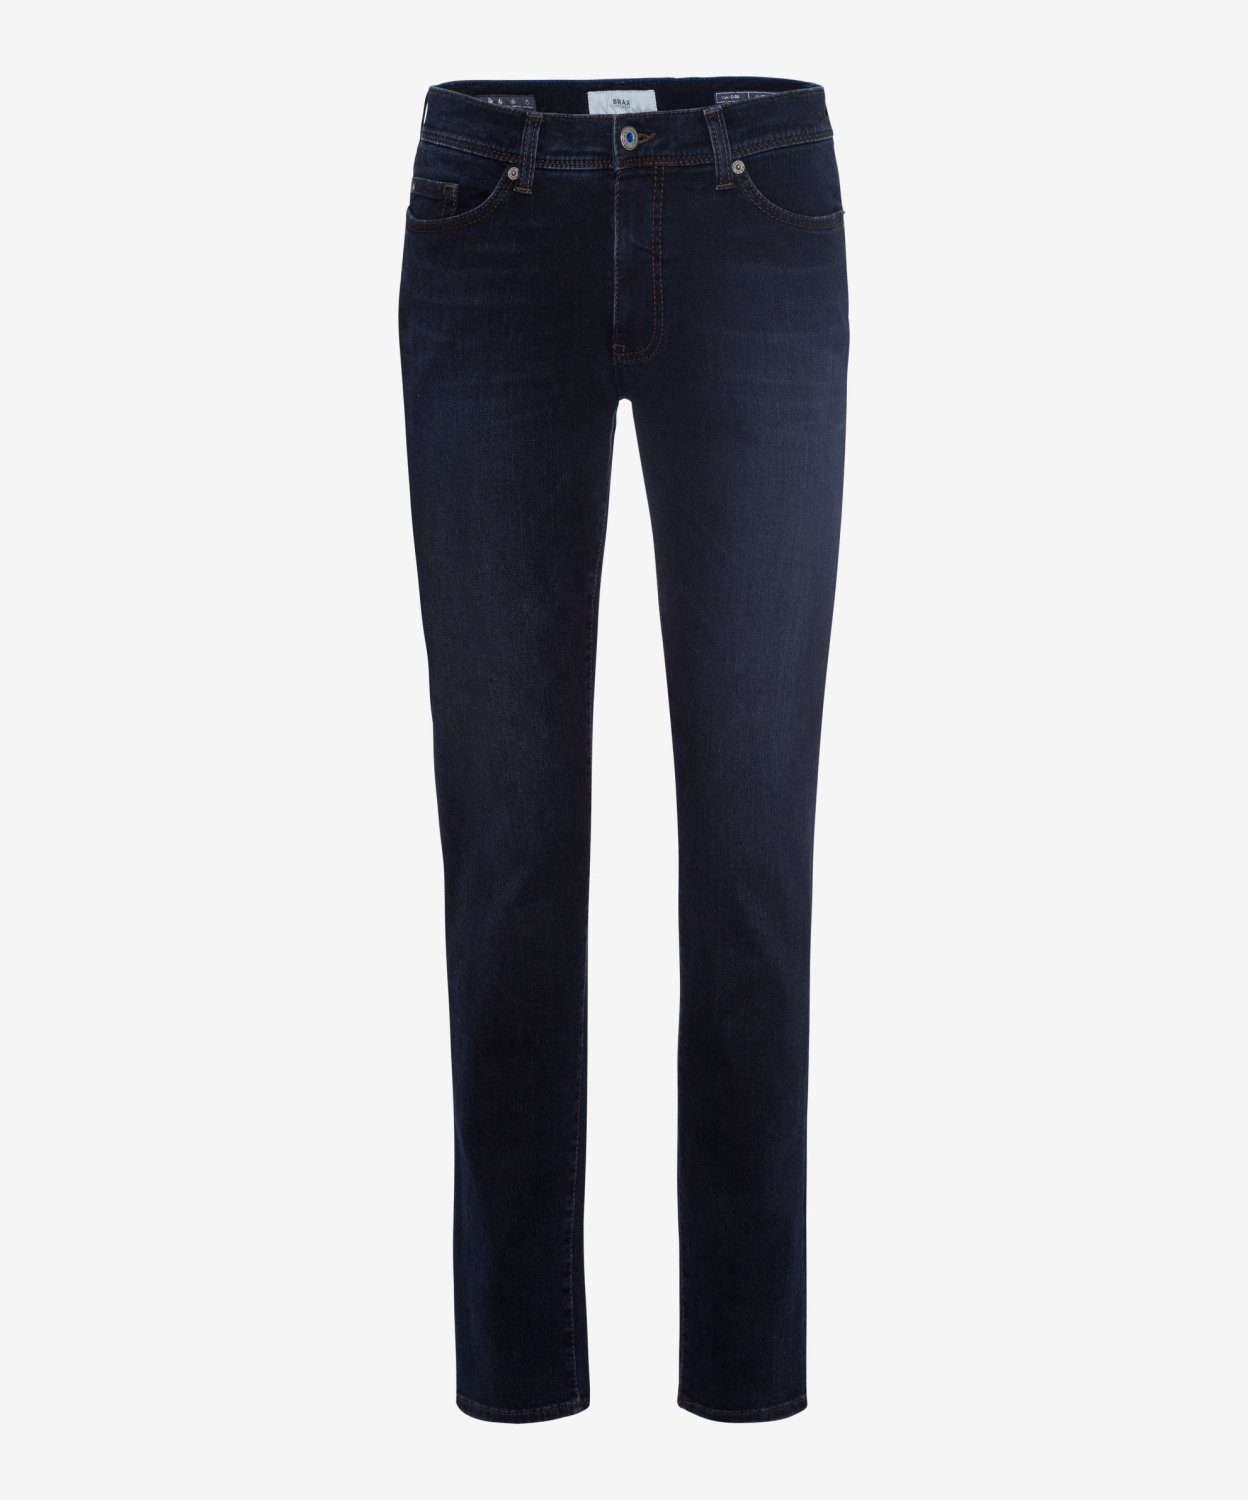 Brax Herren-Jeans online kaufen | OTTO